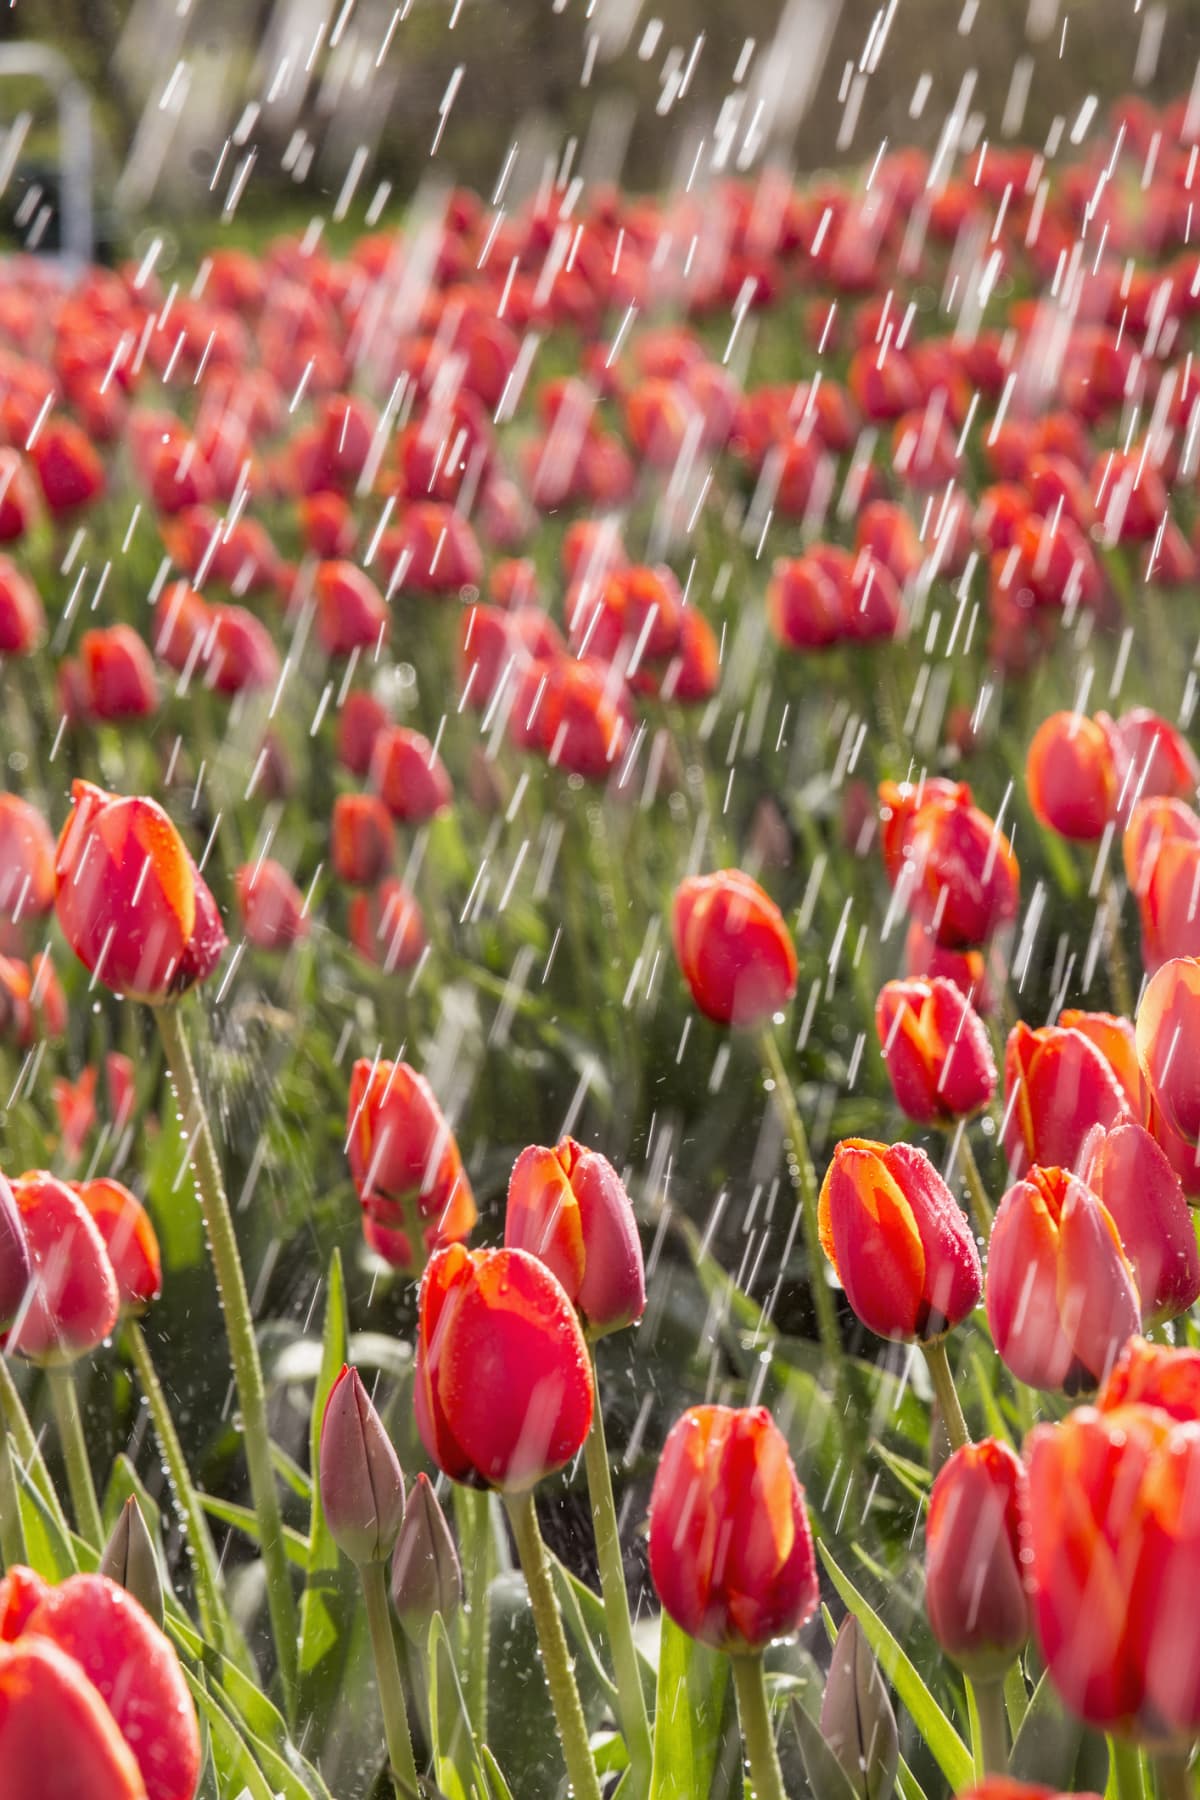 Rain falling on field of tulips